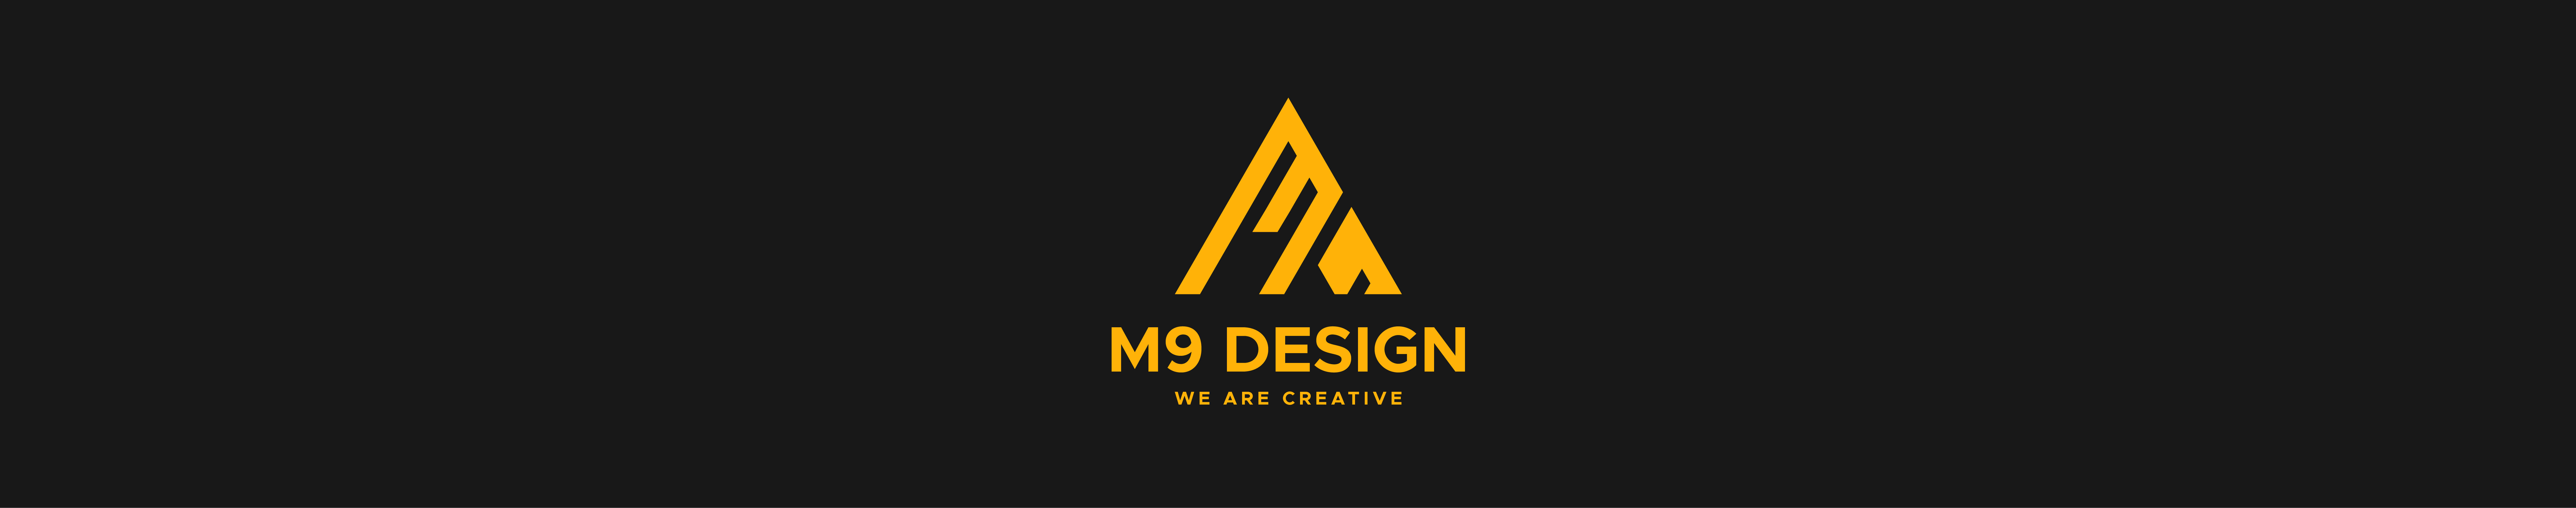 M9 Design's profile banner